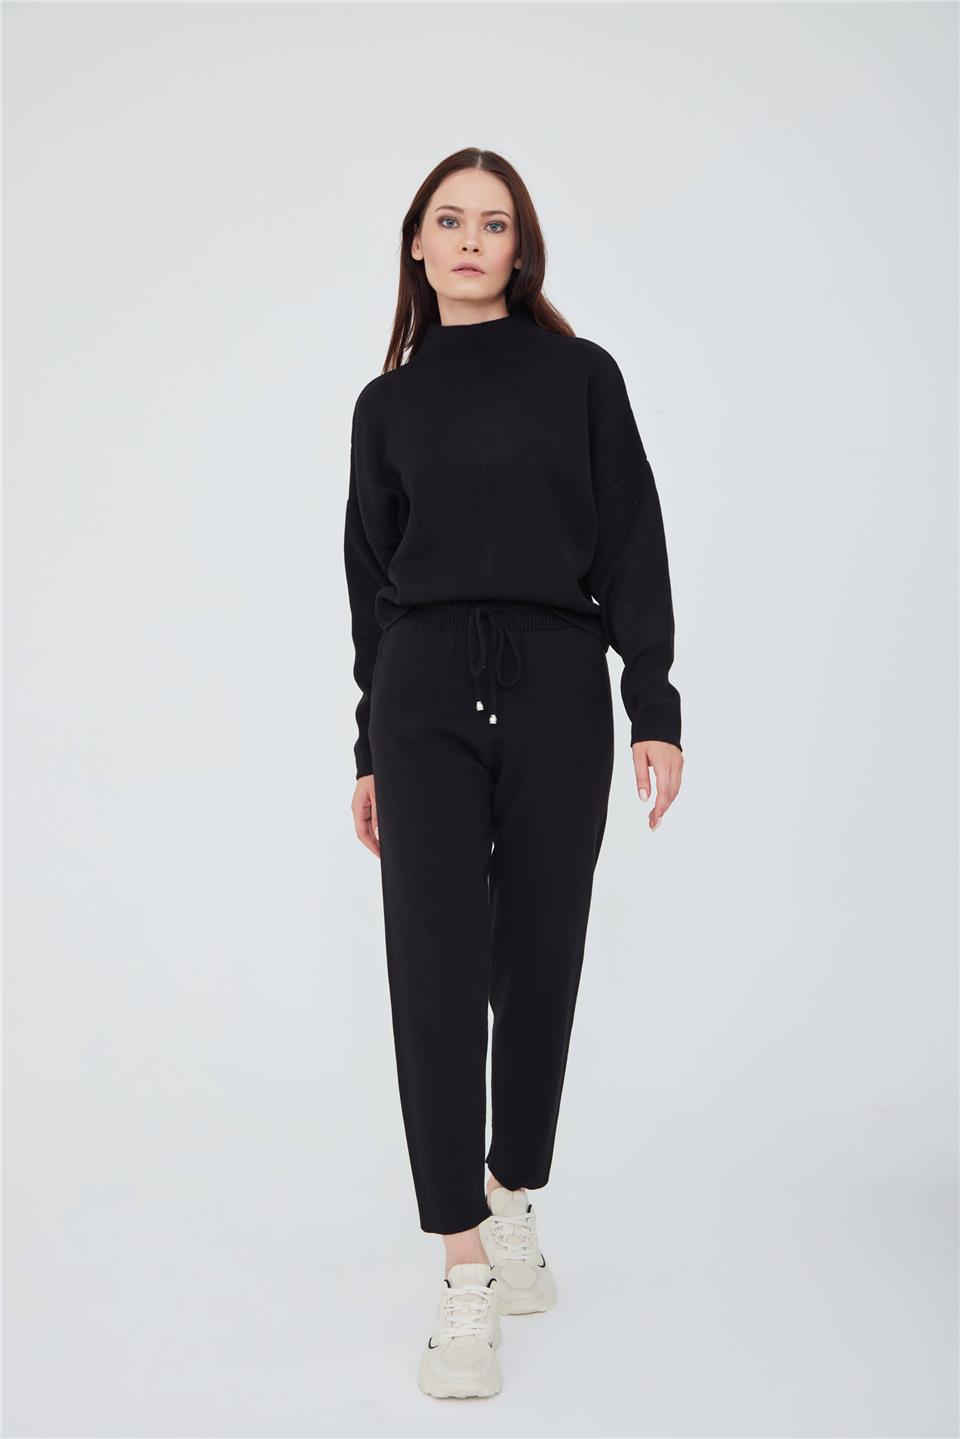 A model wears LFN10751 - Drop Shoulder Turtleneck Knıt Sweater And Slım Fıt Knıt Trousers Wıth Pockets Deep Ink Black - Siyah, wholesale Suit of Lefon to display at Lonca